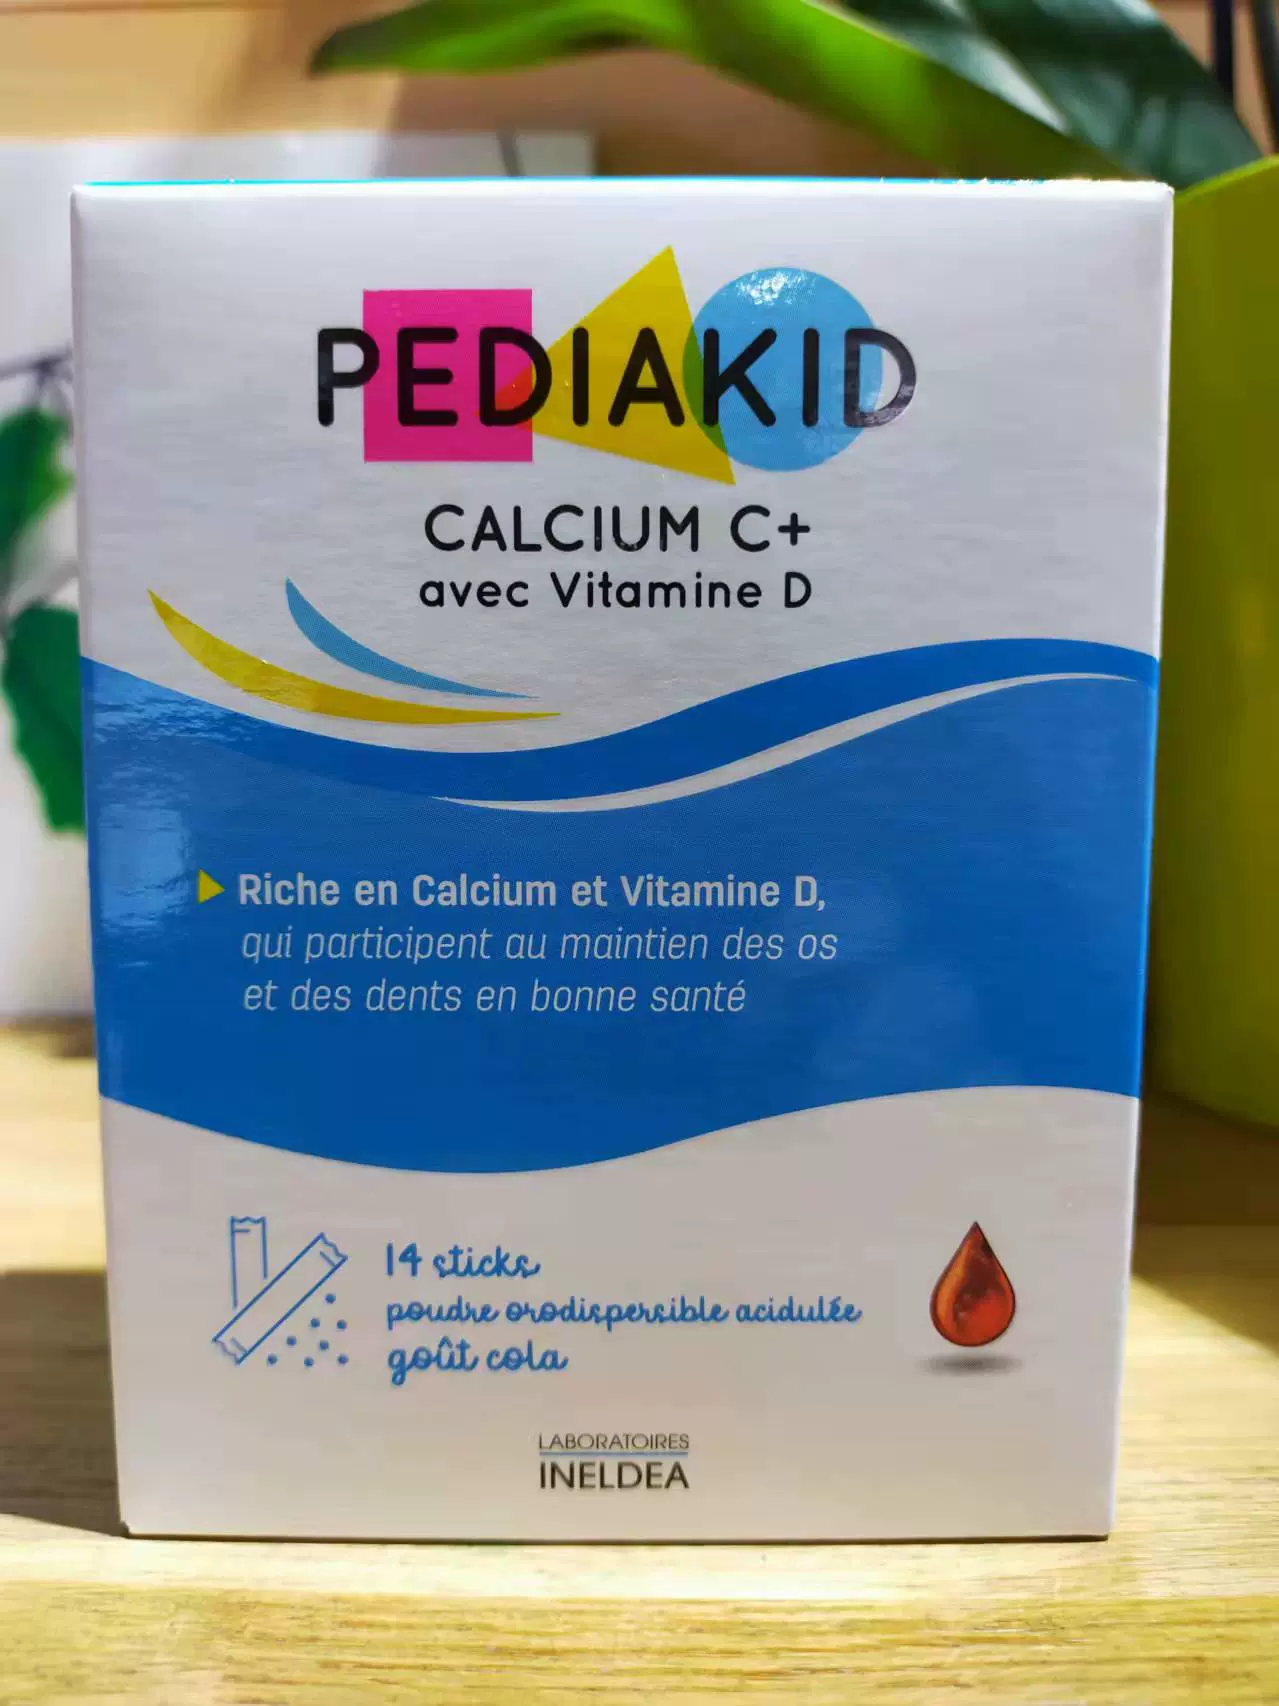 Pediakid Calcium C+ vit D en stick - Poudre orodispersible goût Cola